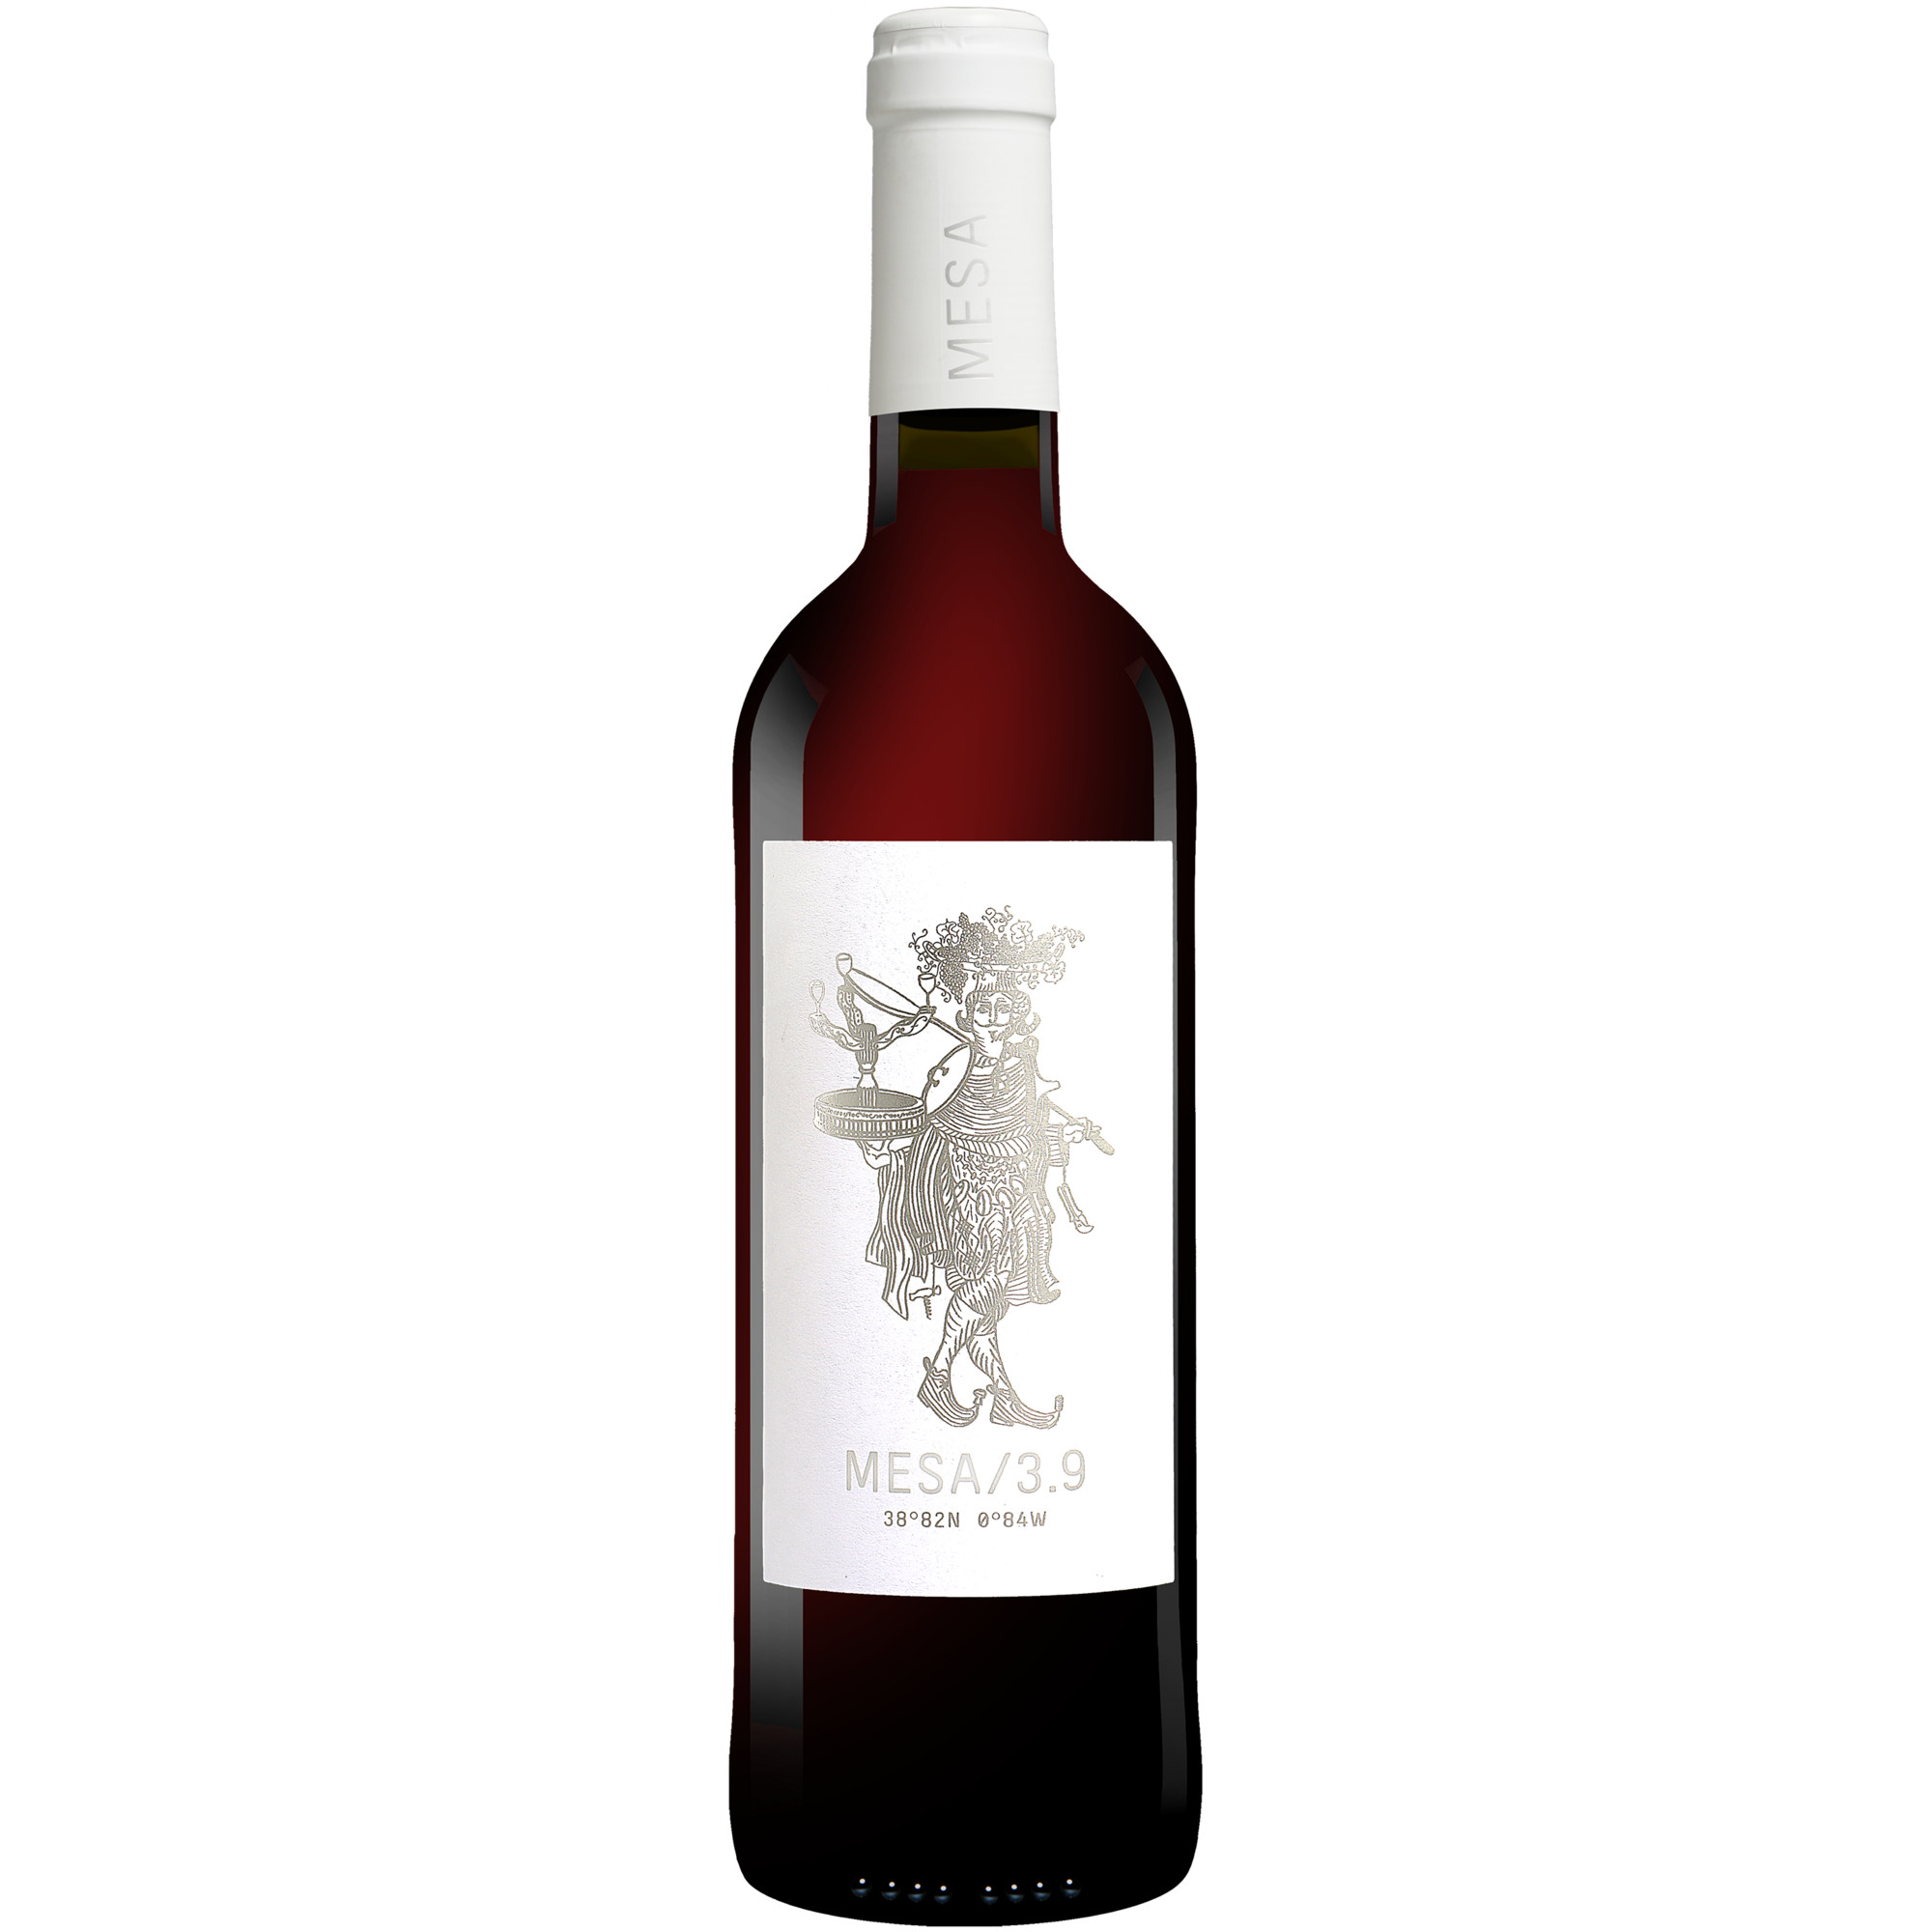 MESA/3.9 Tinto  012.5% Vol. Rotwein Halbtrocken aus Spanien